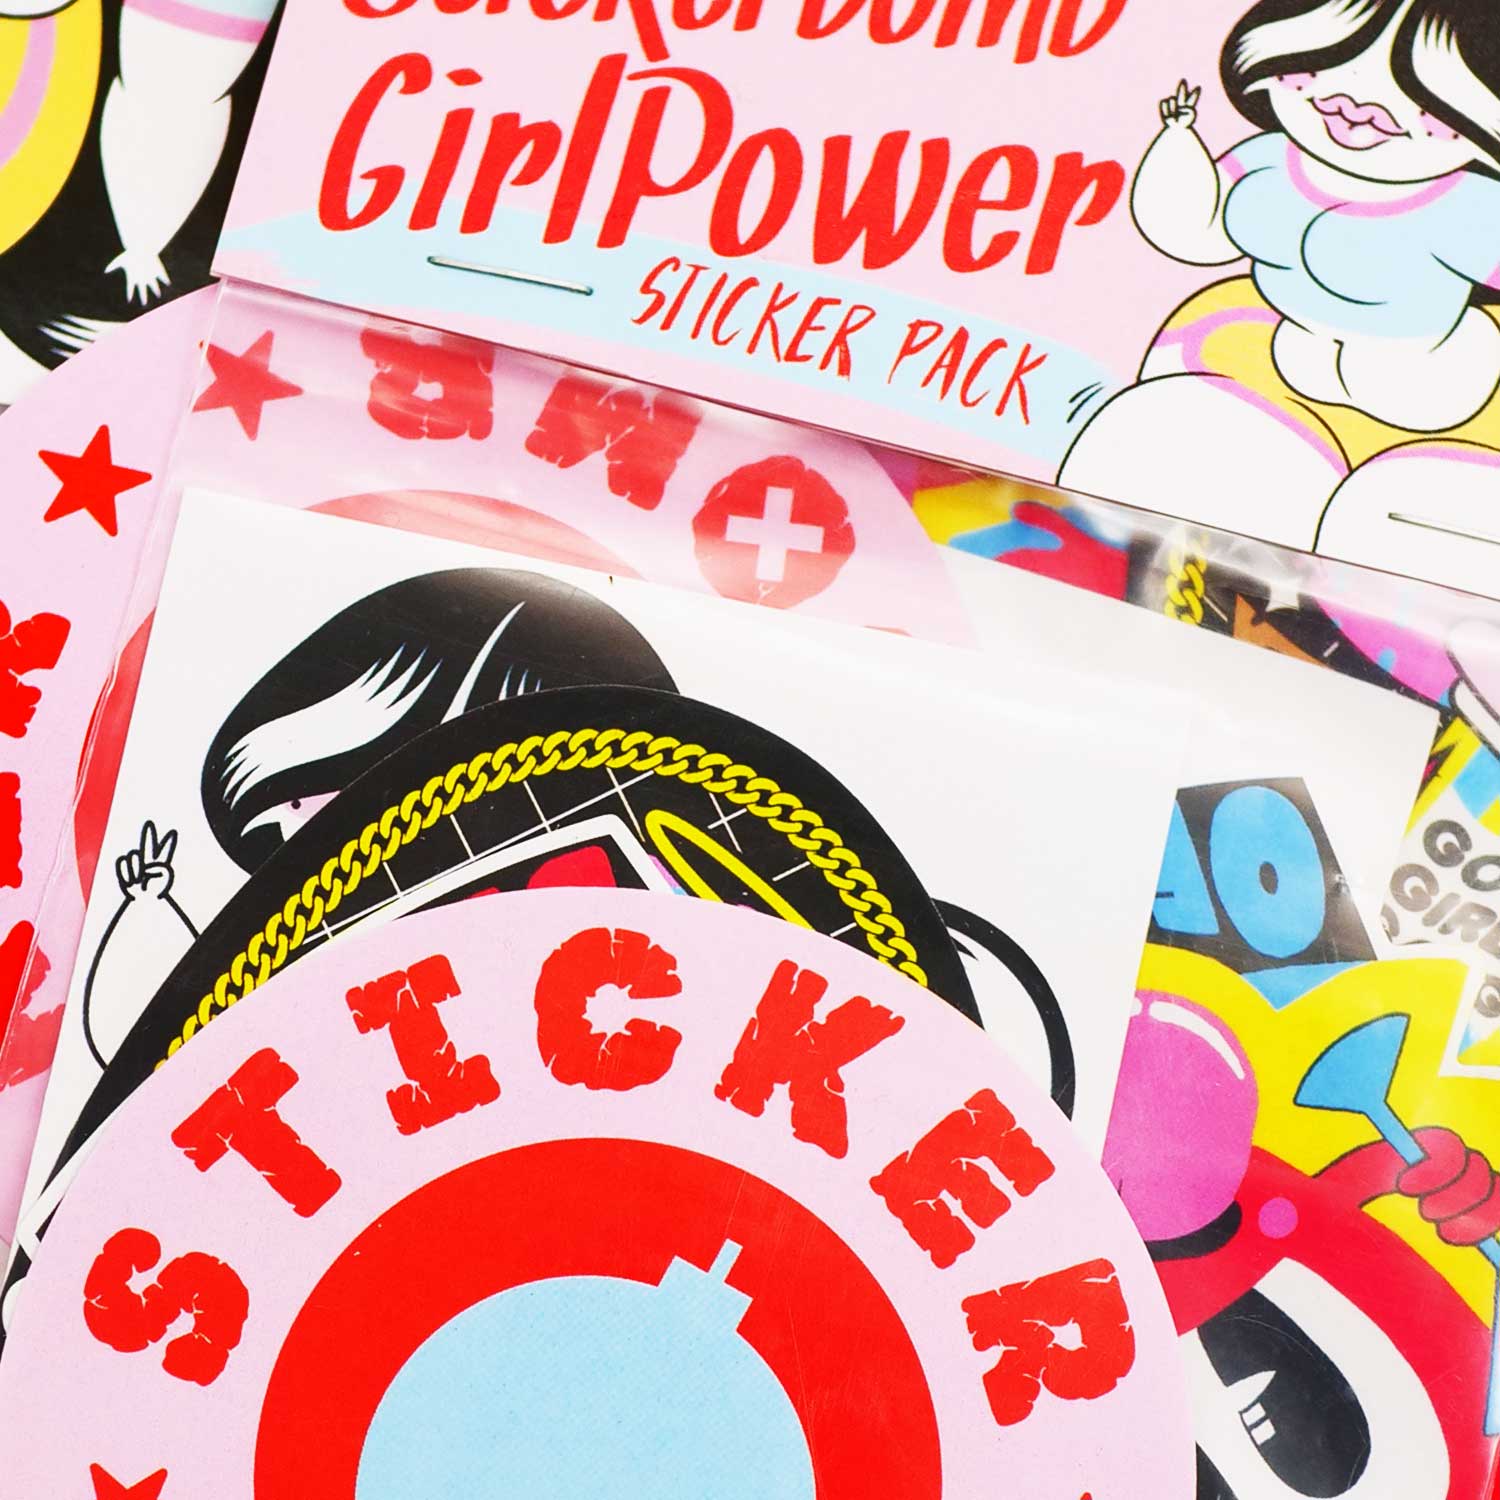 Stickerbomb Girl Power Sticker Pack